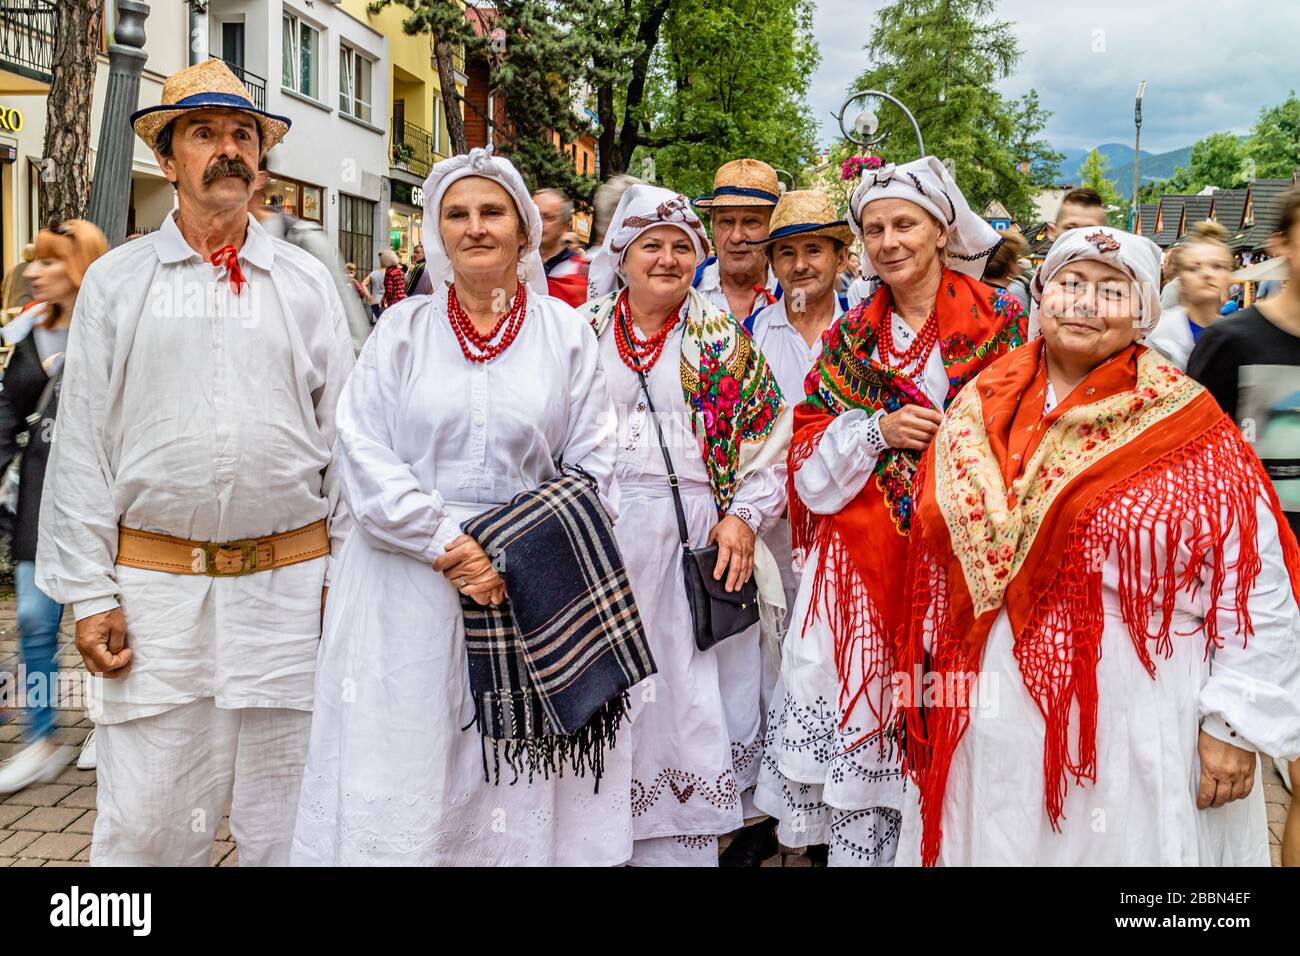 Un groupe de personnes portant une version de costume traditionnel dans le centre-ville de Zakopane, Zakopane, dans le sud de la Pologne. Juillet 2017. Banque D'Images